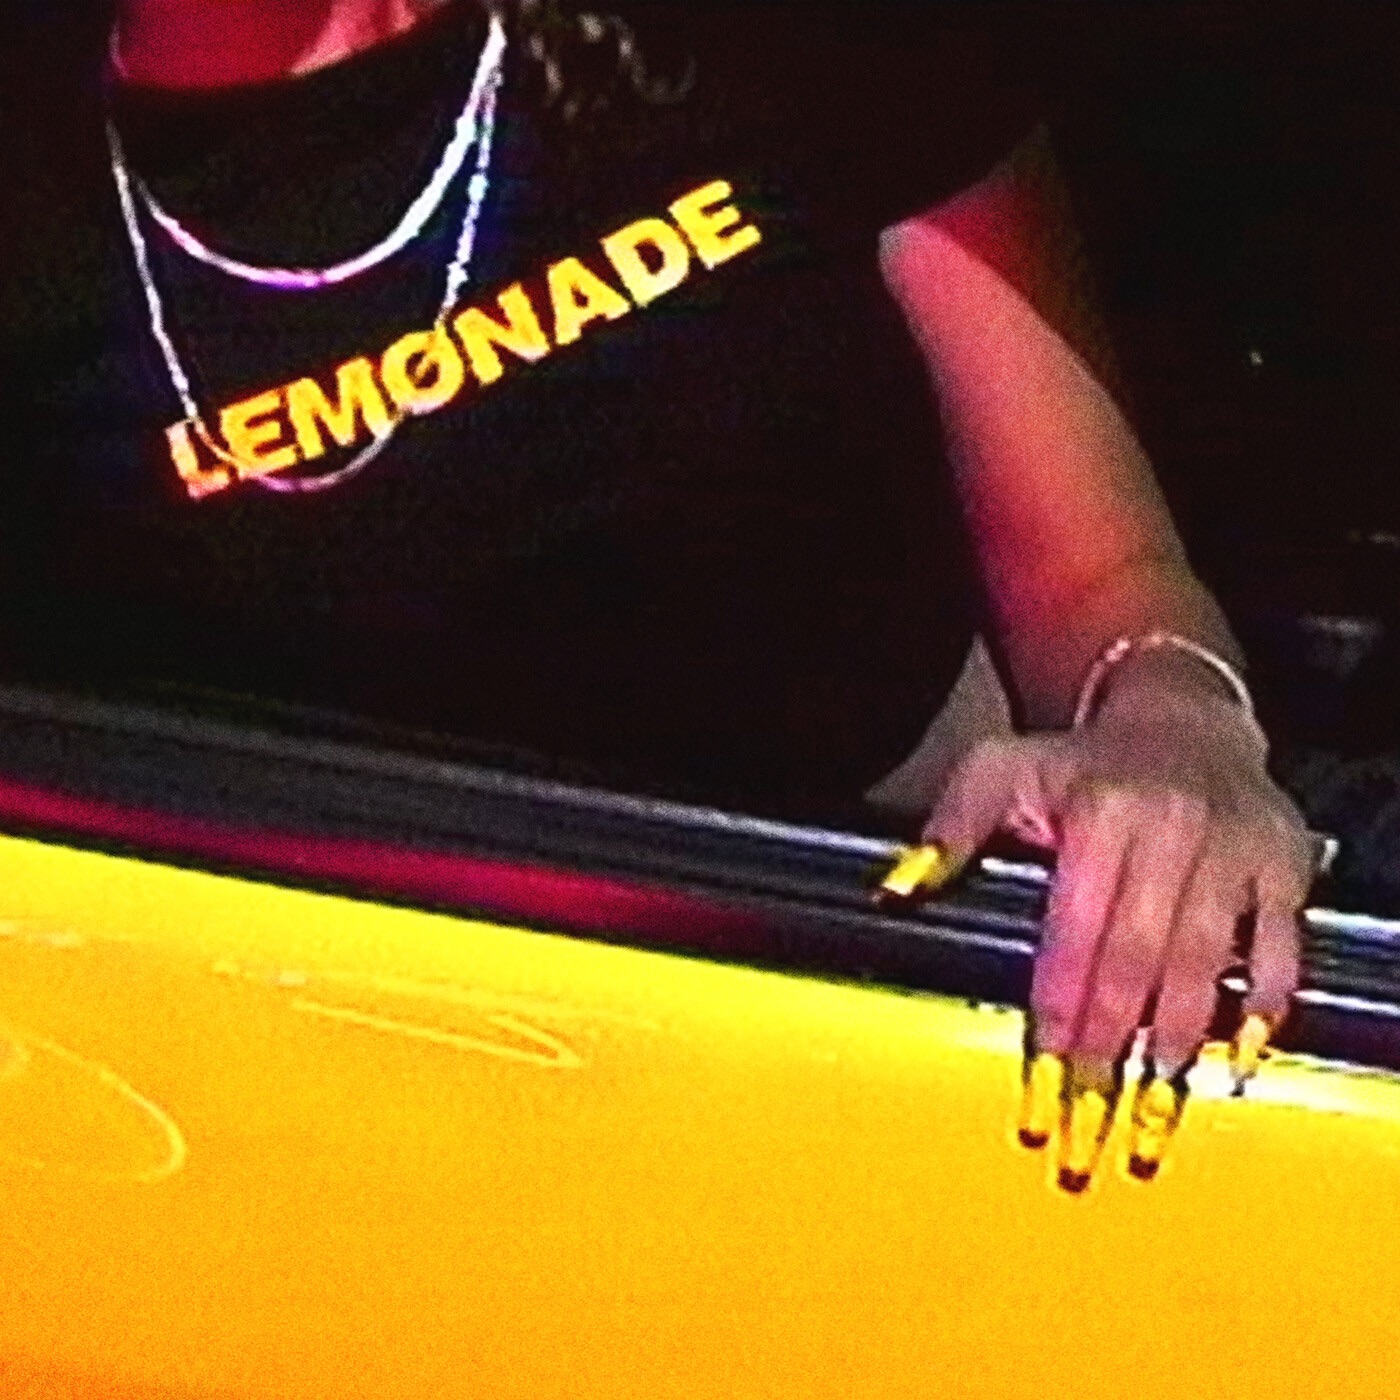 lemonade by Karri